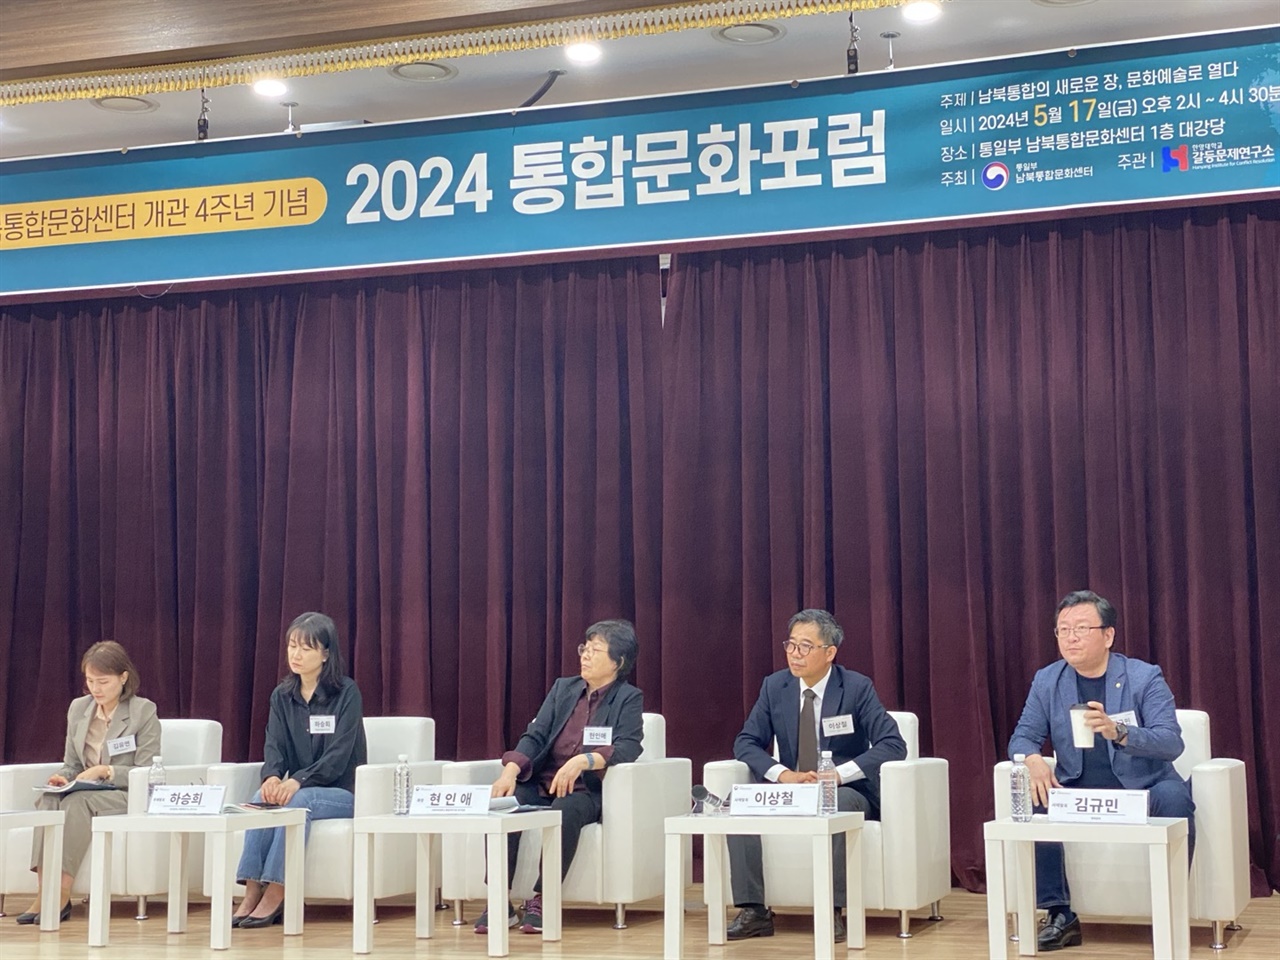 남북통합문화센터 개관 4주년 기념 '2024통합문화포럼'에 참석한 전문가와 발표자들